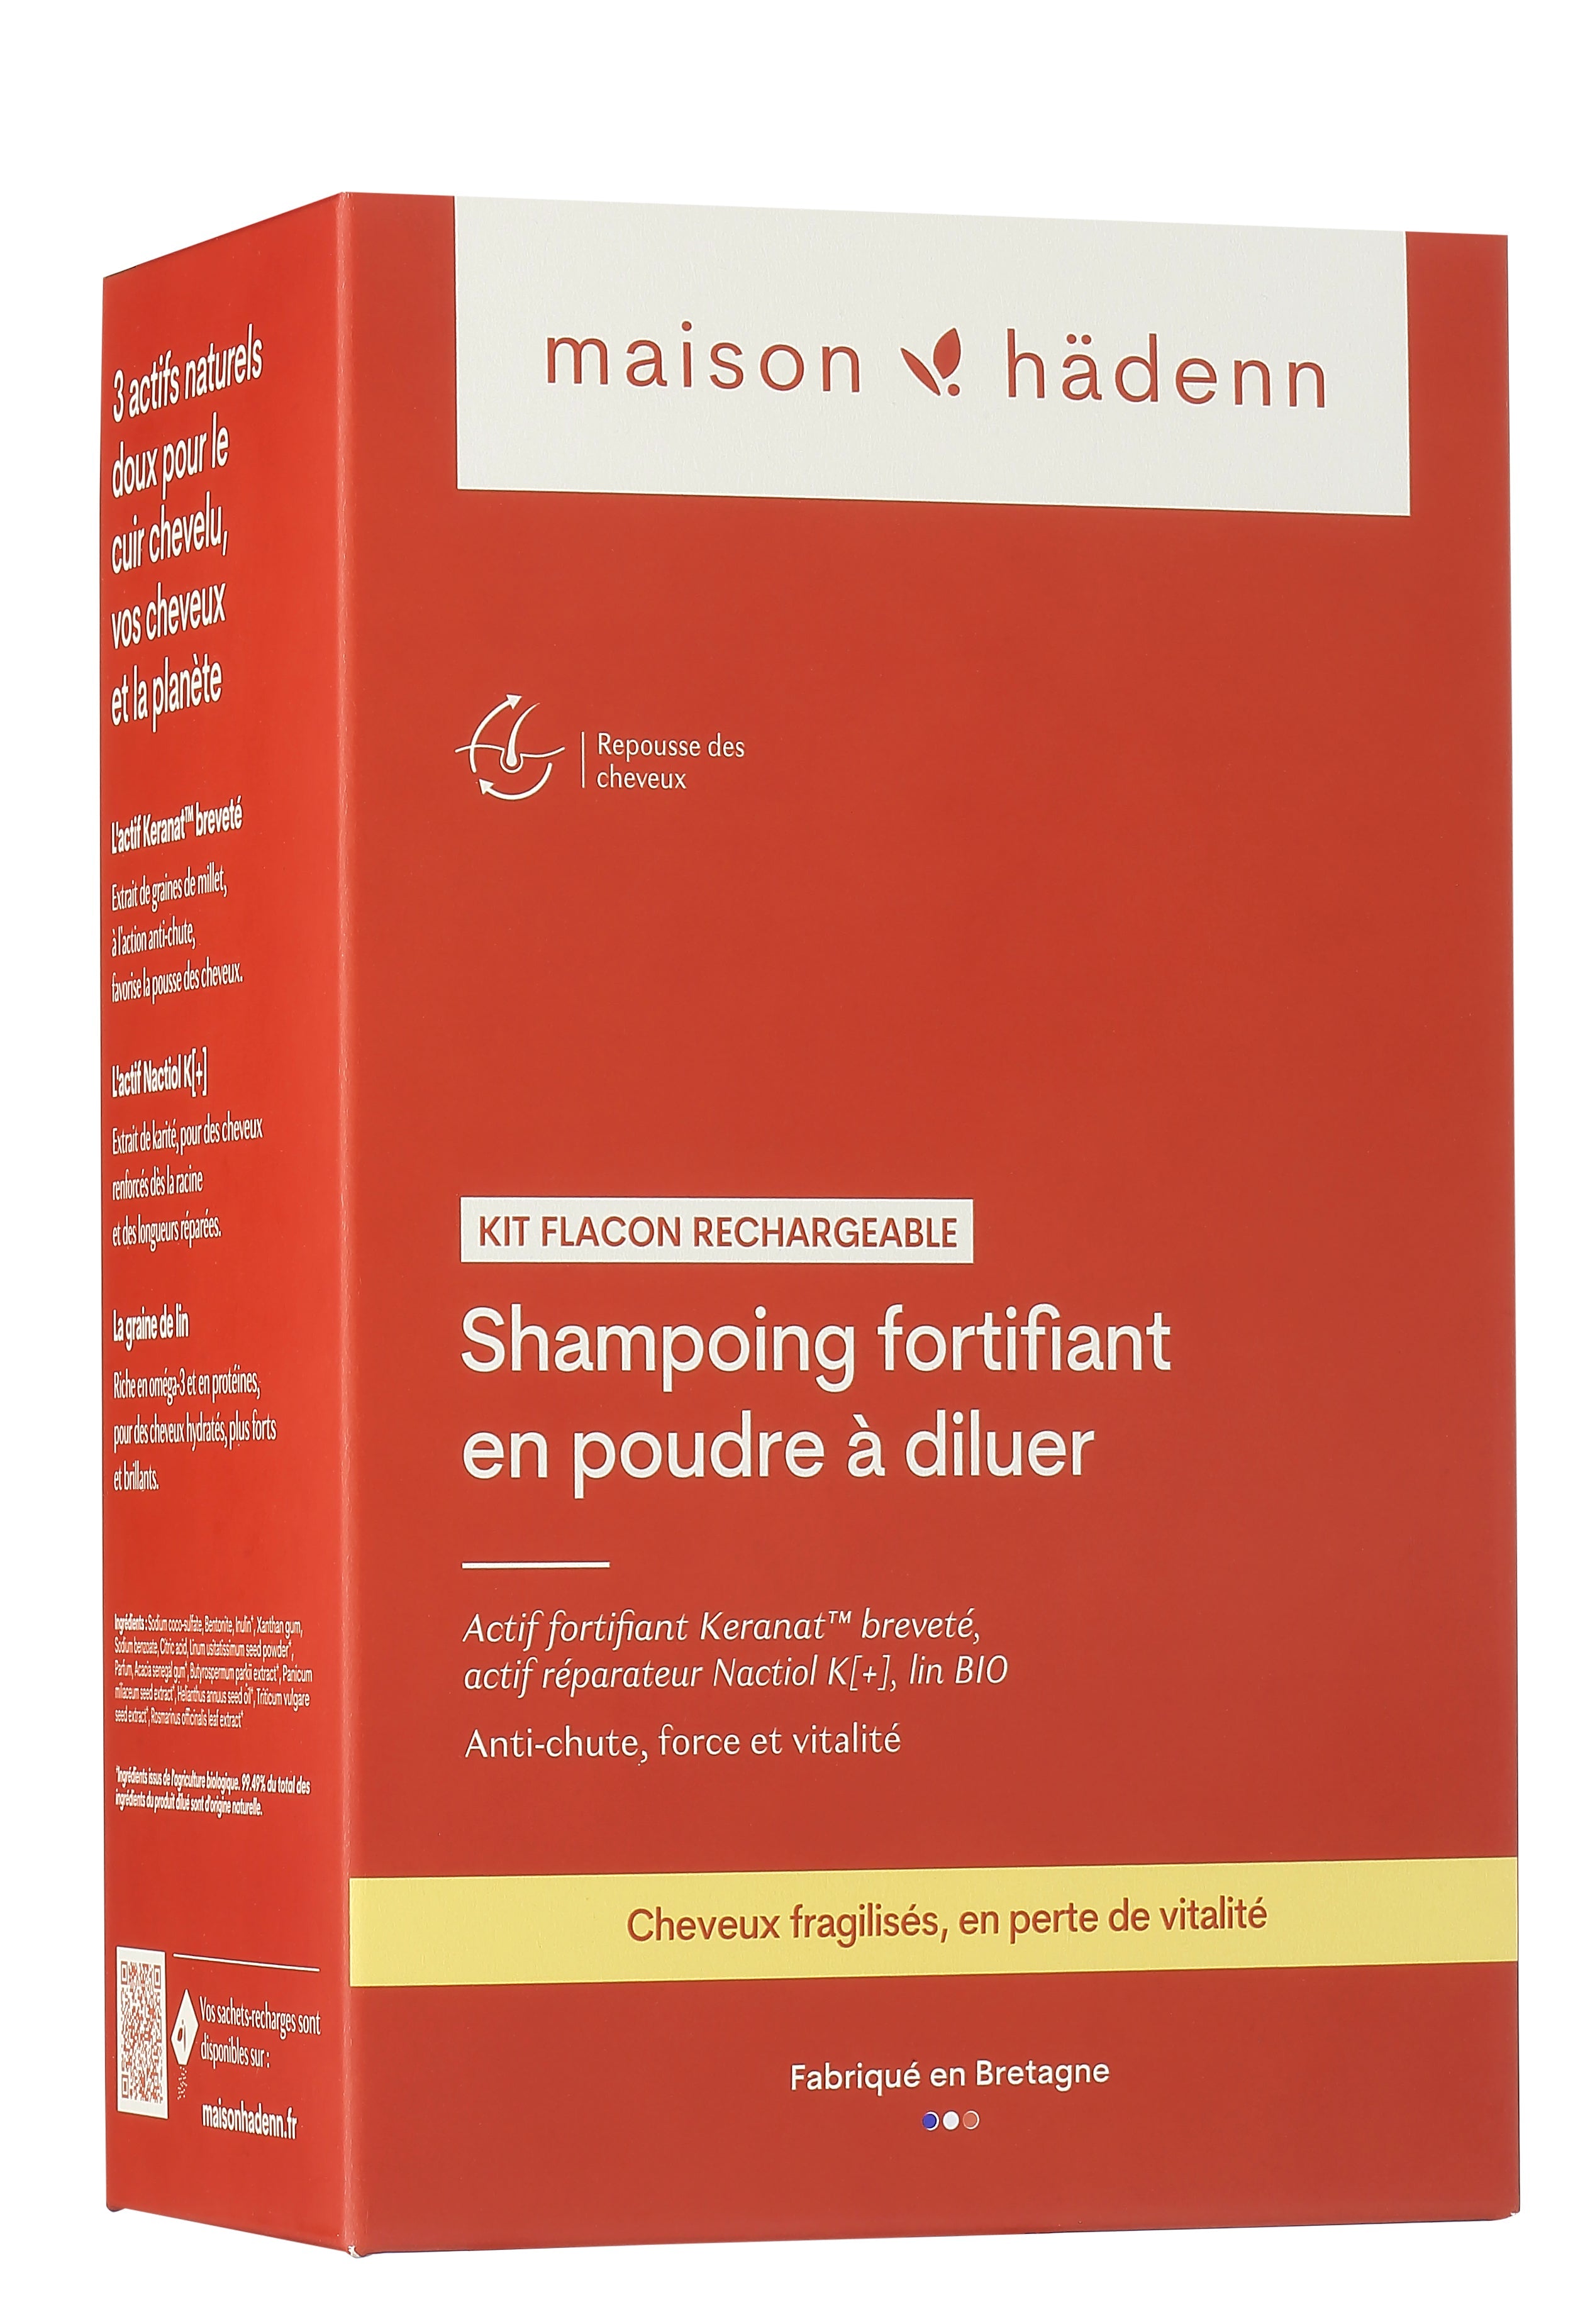 Shampoing fortifiant en poudre • Anti-chute, force et vitalité-maison hädenn  image-3
